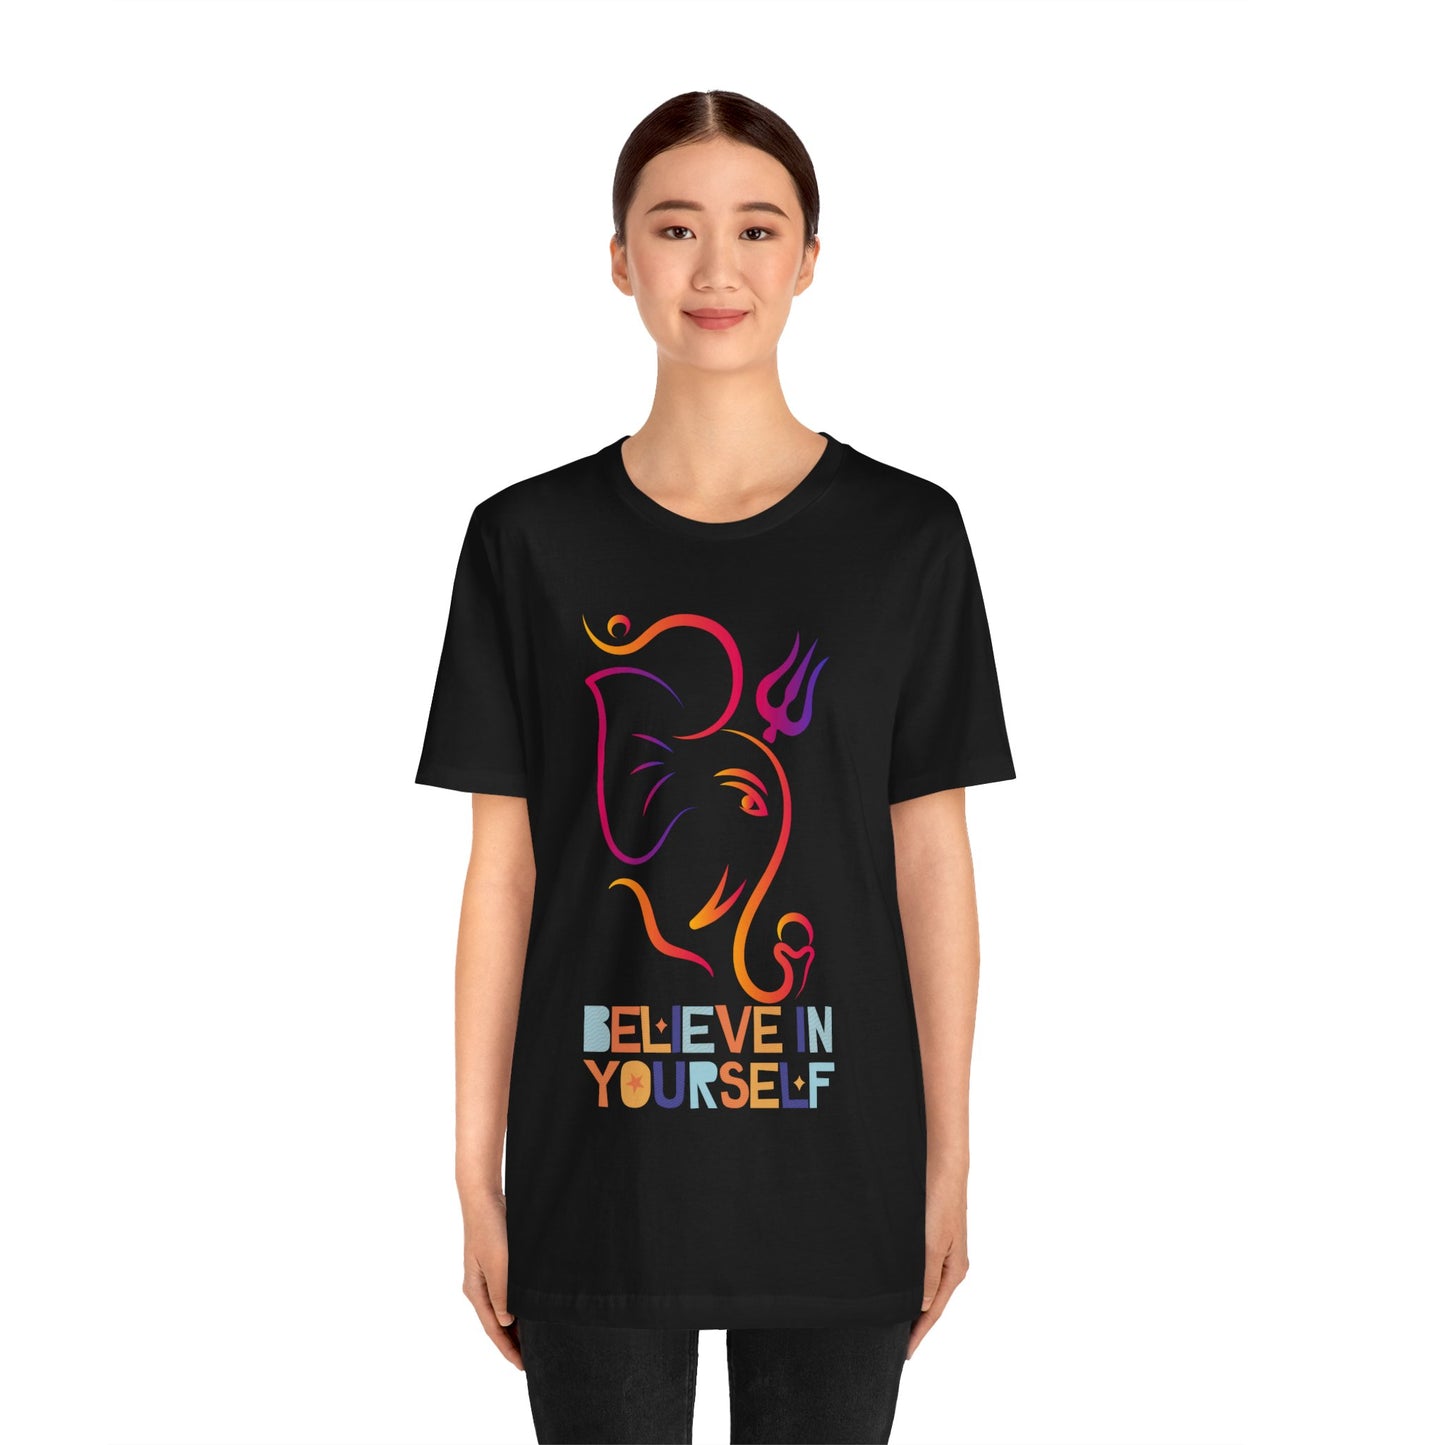 Divine Ganesha: Elegant Hindu Mythology-Inspired T-Shirt Unisex Jersey Short Sleeve Tee